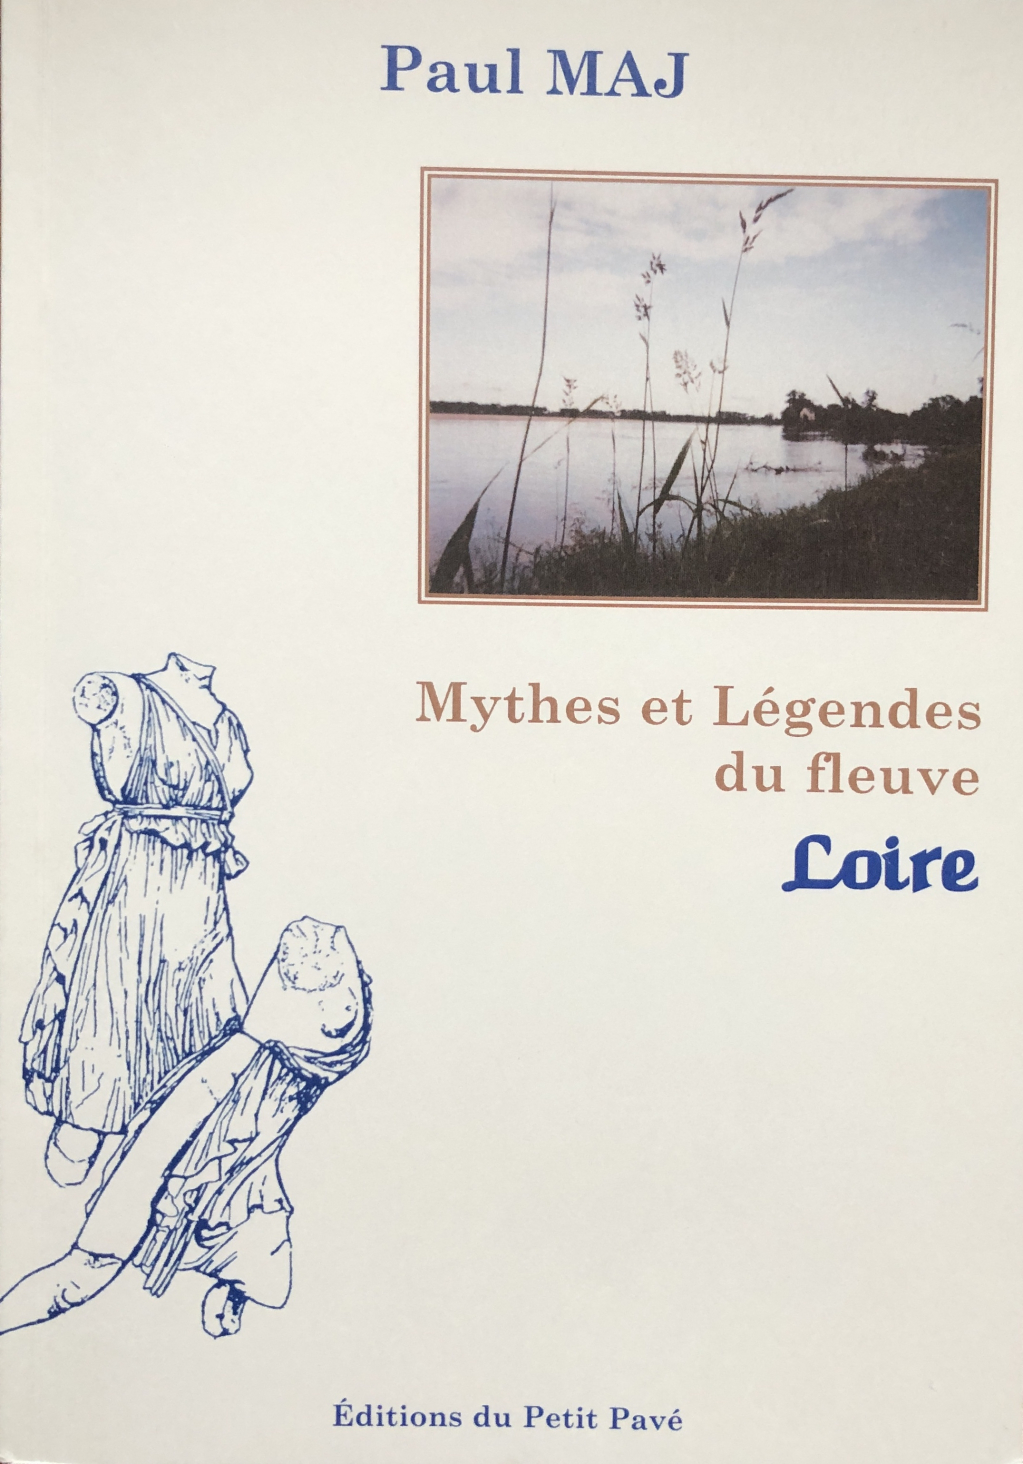 MAJ mythes et légendes du fleuve IMG_3250 - Copie